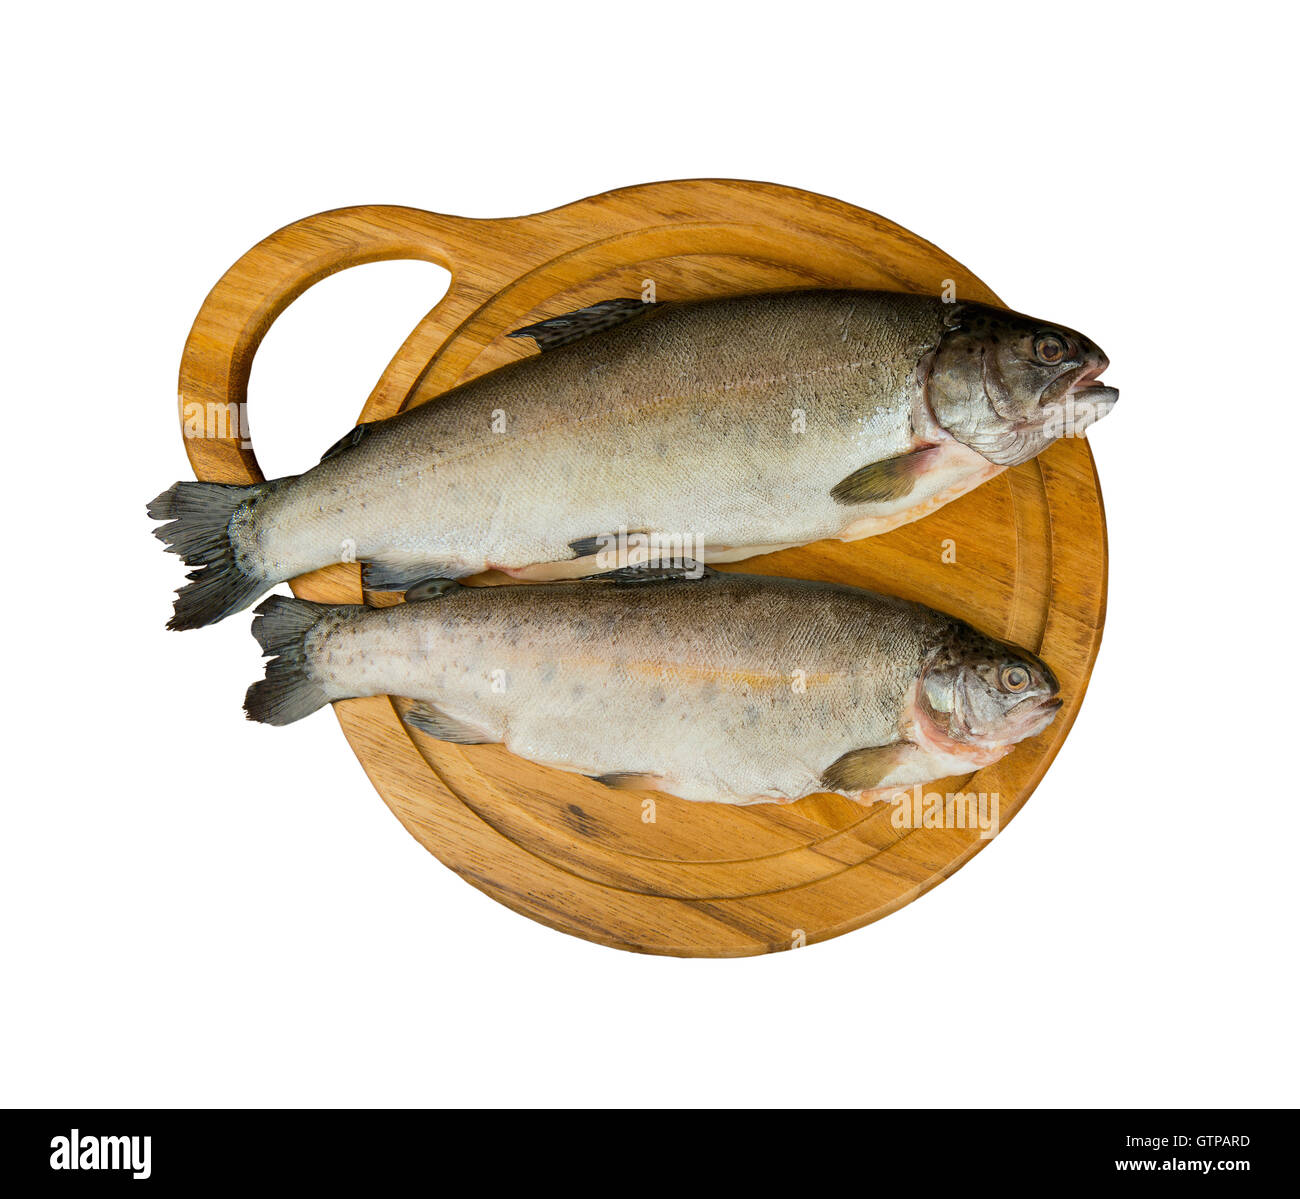 Fresco pesce crudo trote è due pezzi sulla tavola per il taglio di prodotti alimentari top view - isolato su bianco Foto Stock